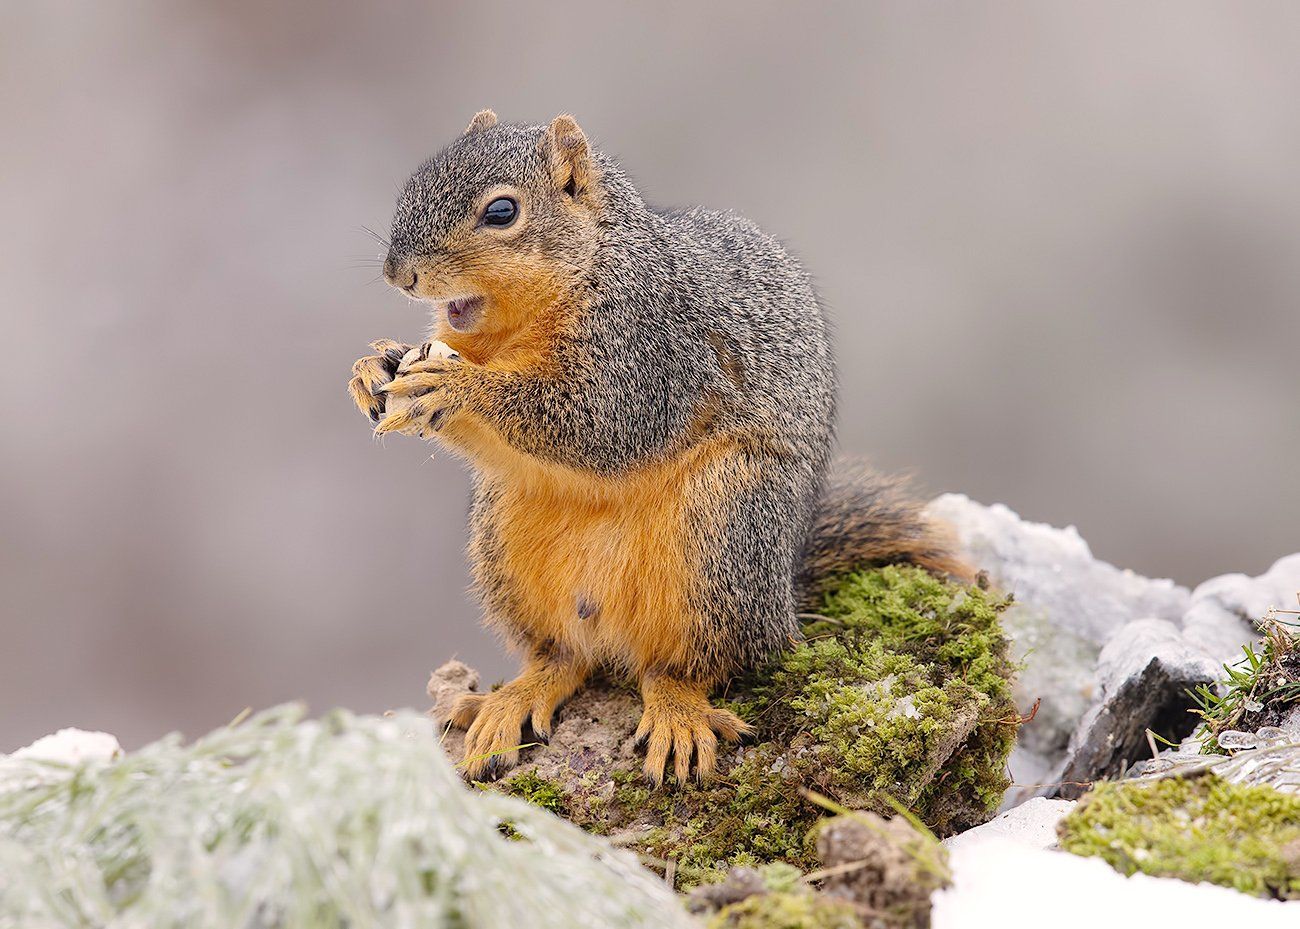 белка, squirrel, лисья белка, fox squirrel, животные,animals, cнег,  дикие животные, животные в снег, зима, Elizabeth Etkind